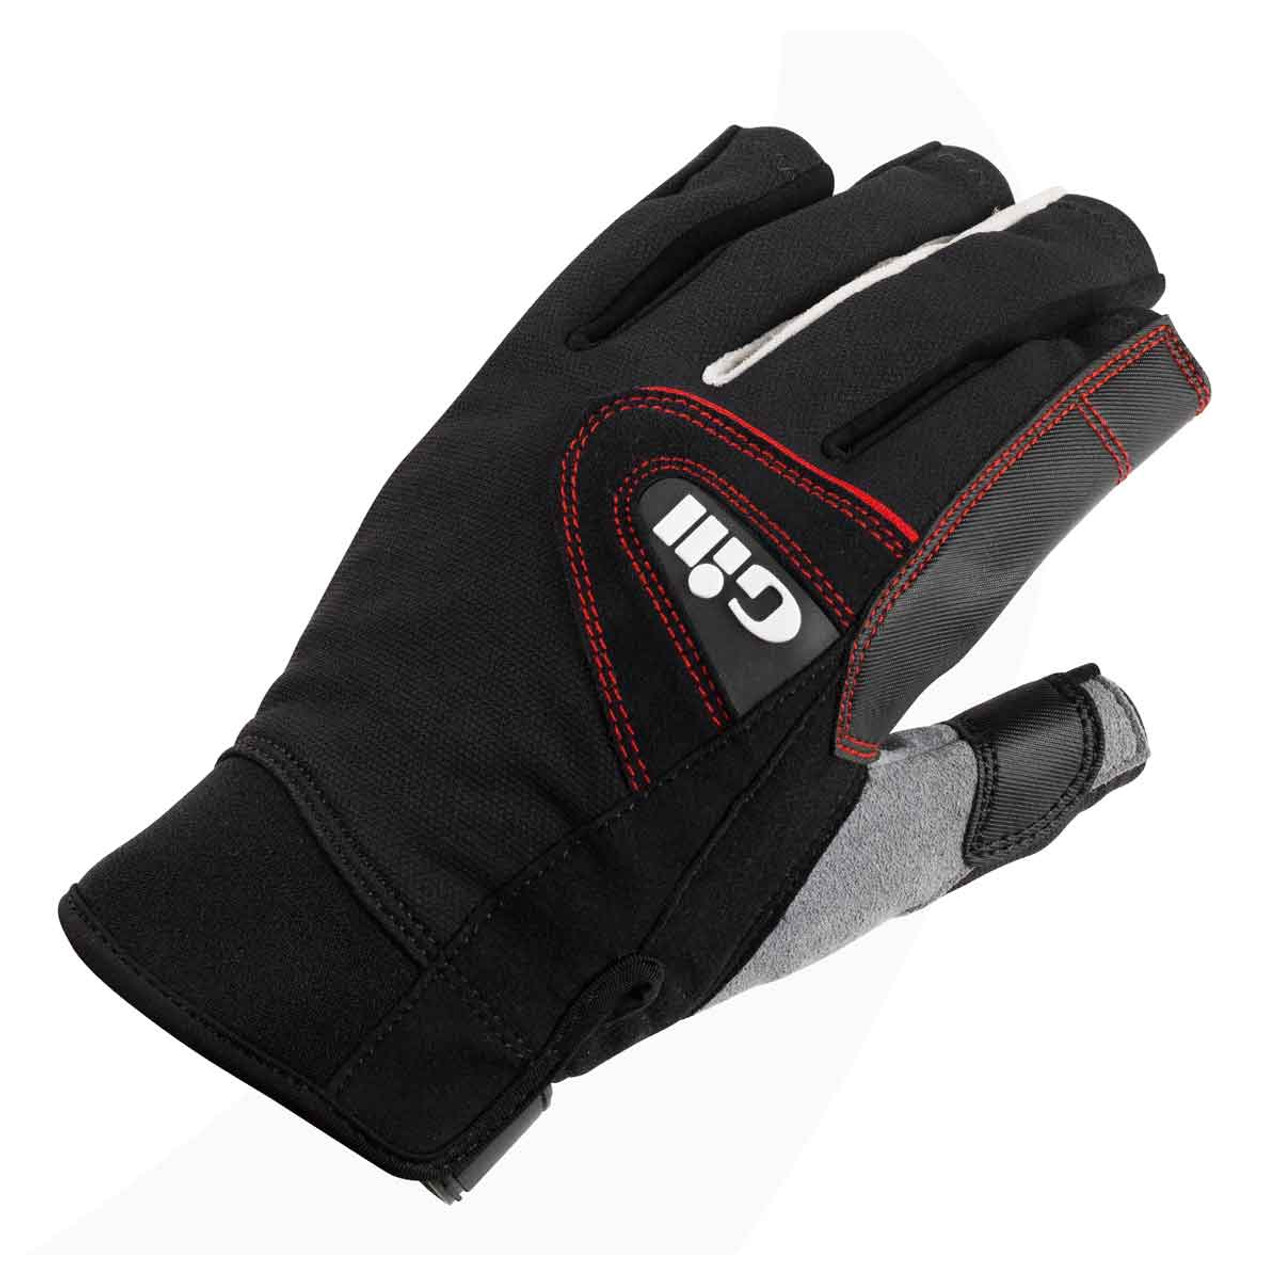 Gill Championship Gloves (Short) Black